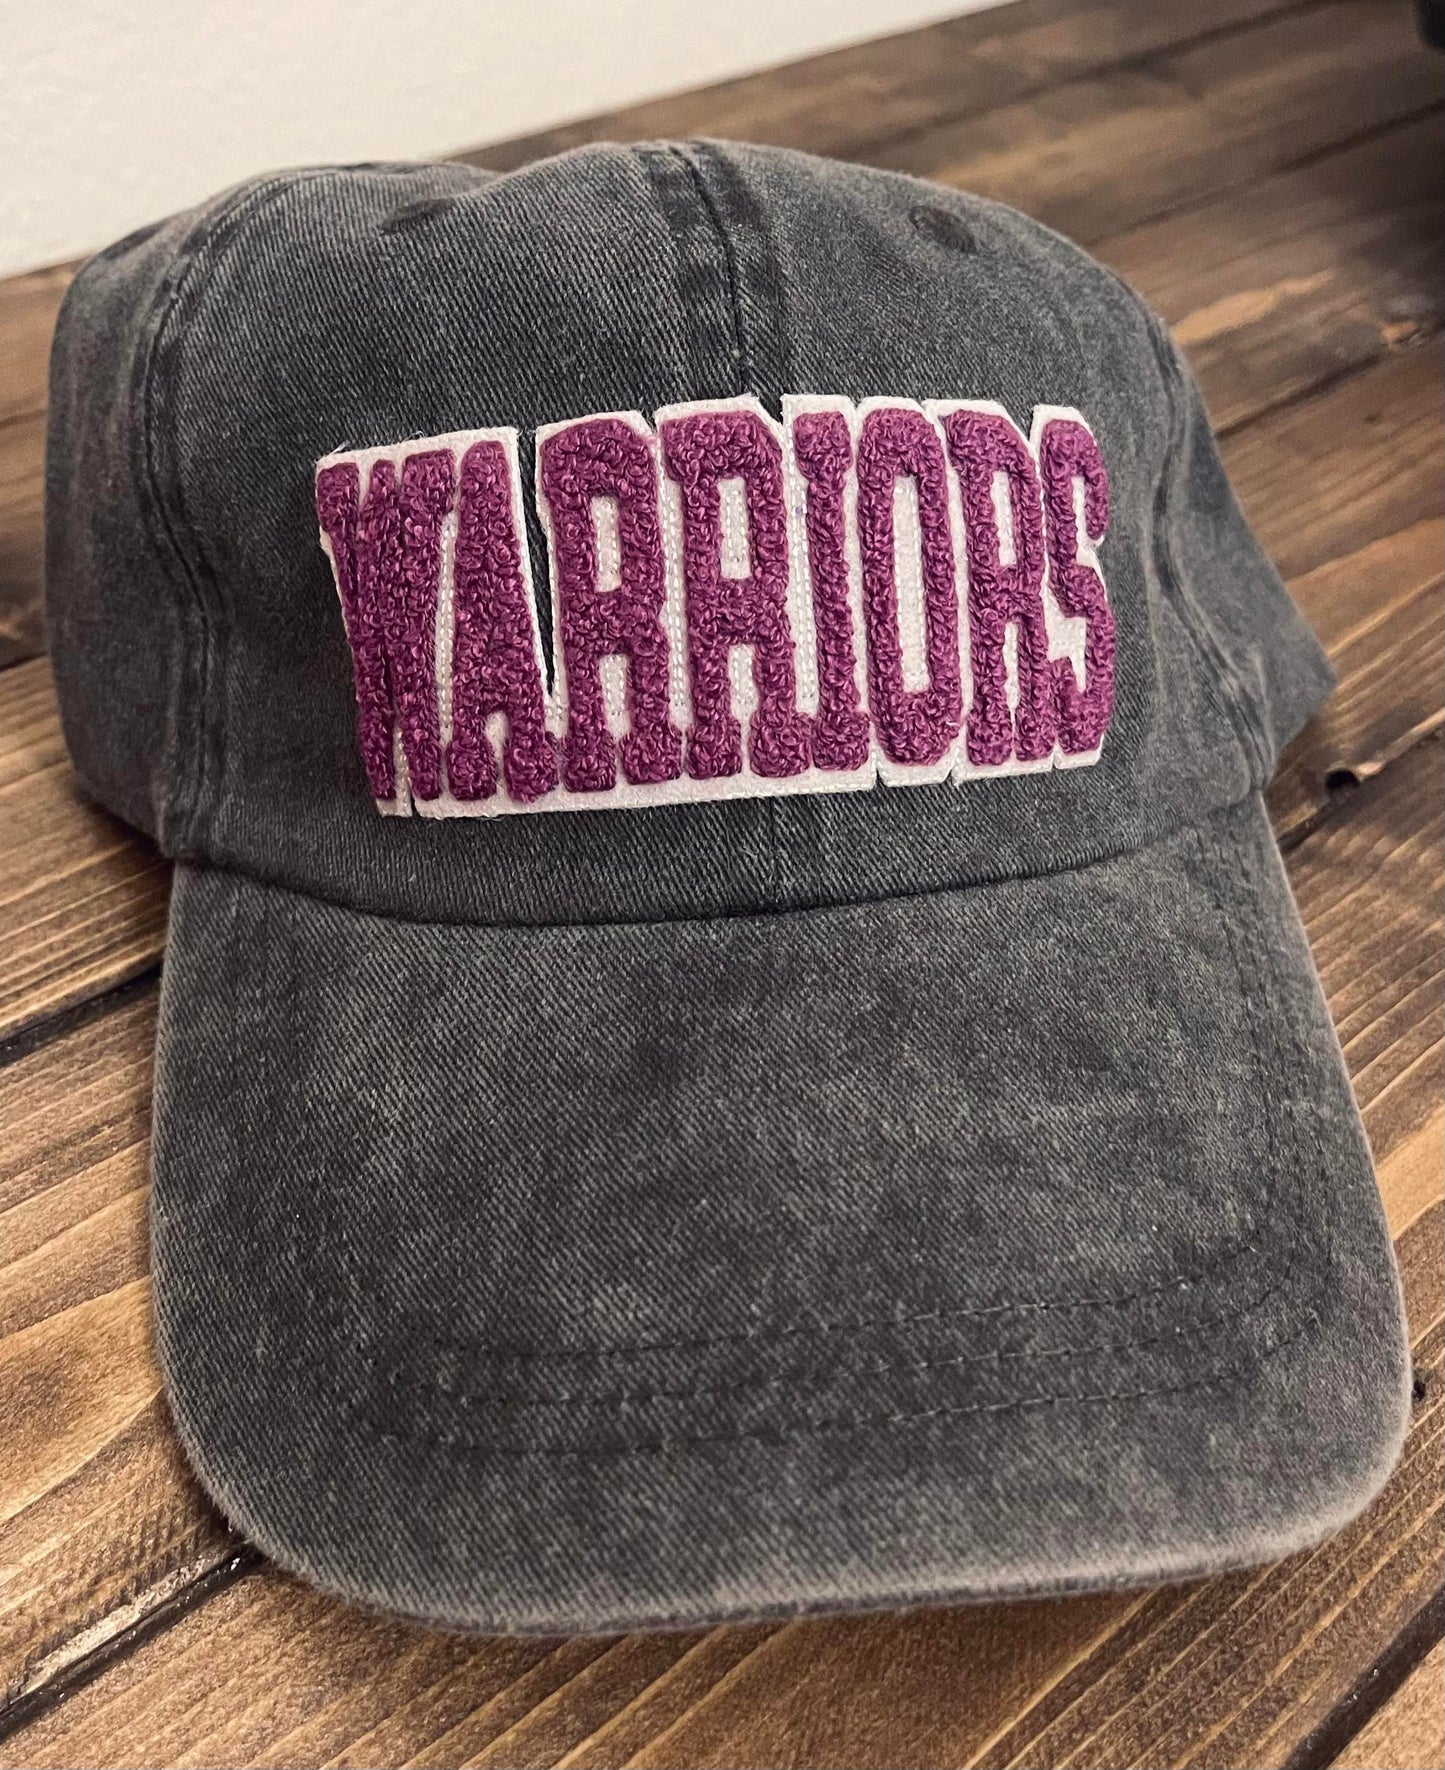 WARRIORS - Vintage Chenille Patch Cap